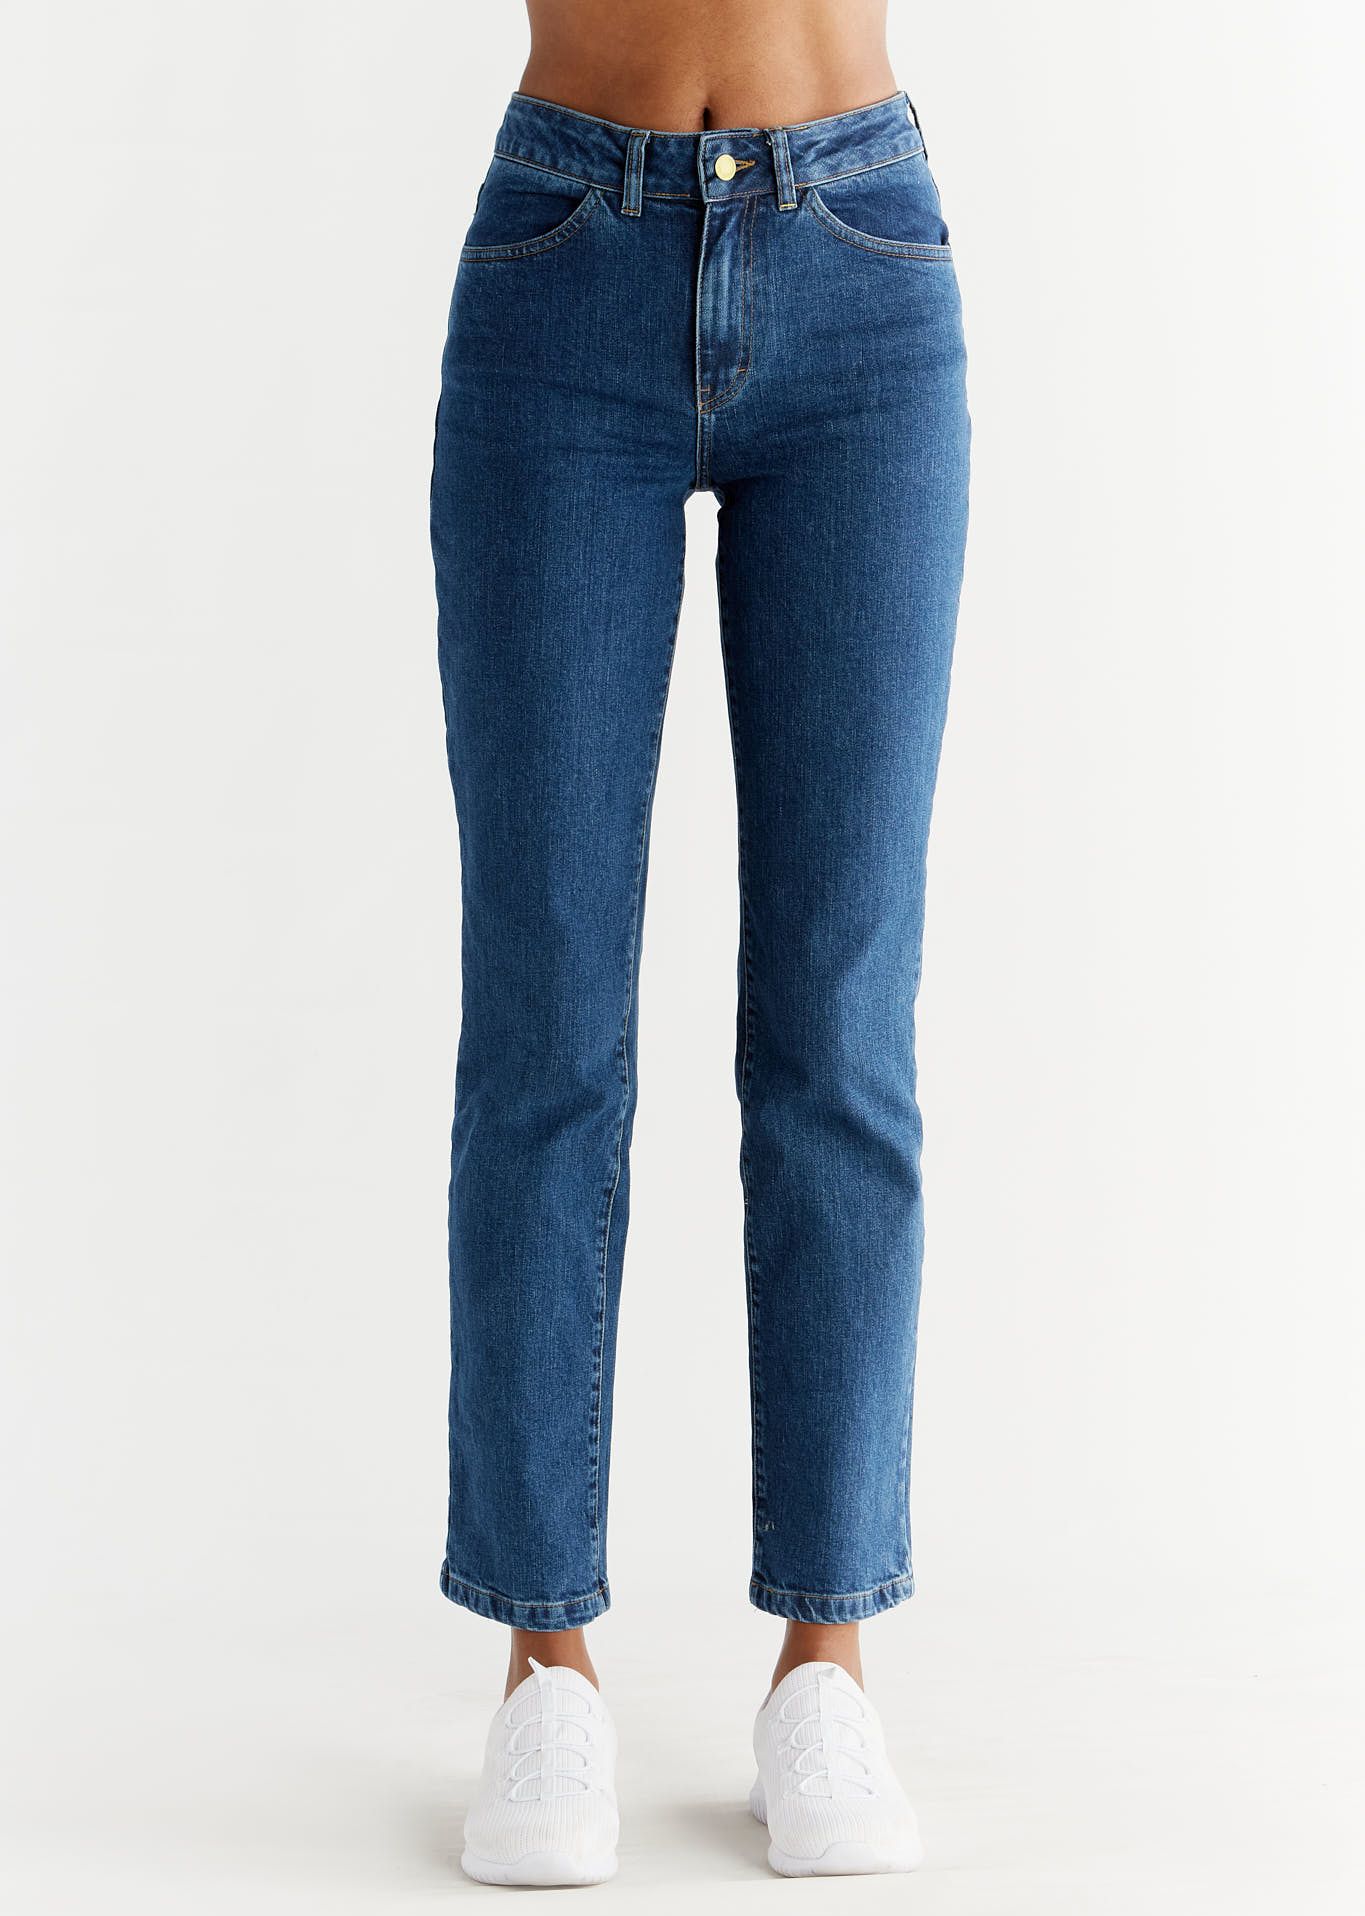 Jeans Women's Straight Fit Lapis Blue